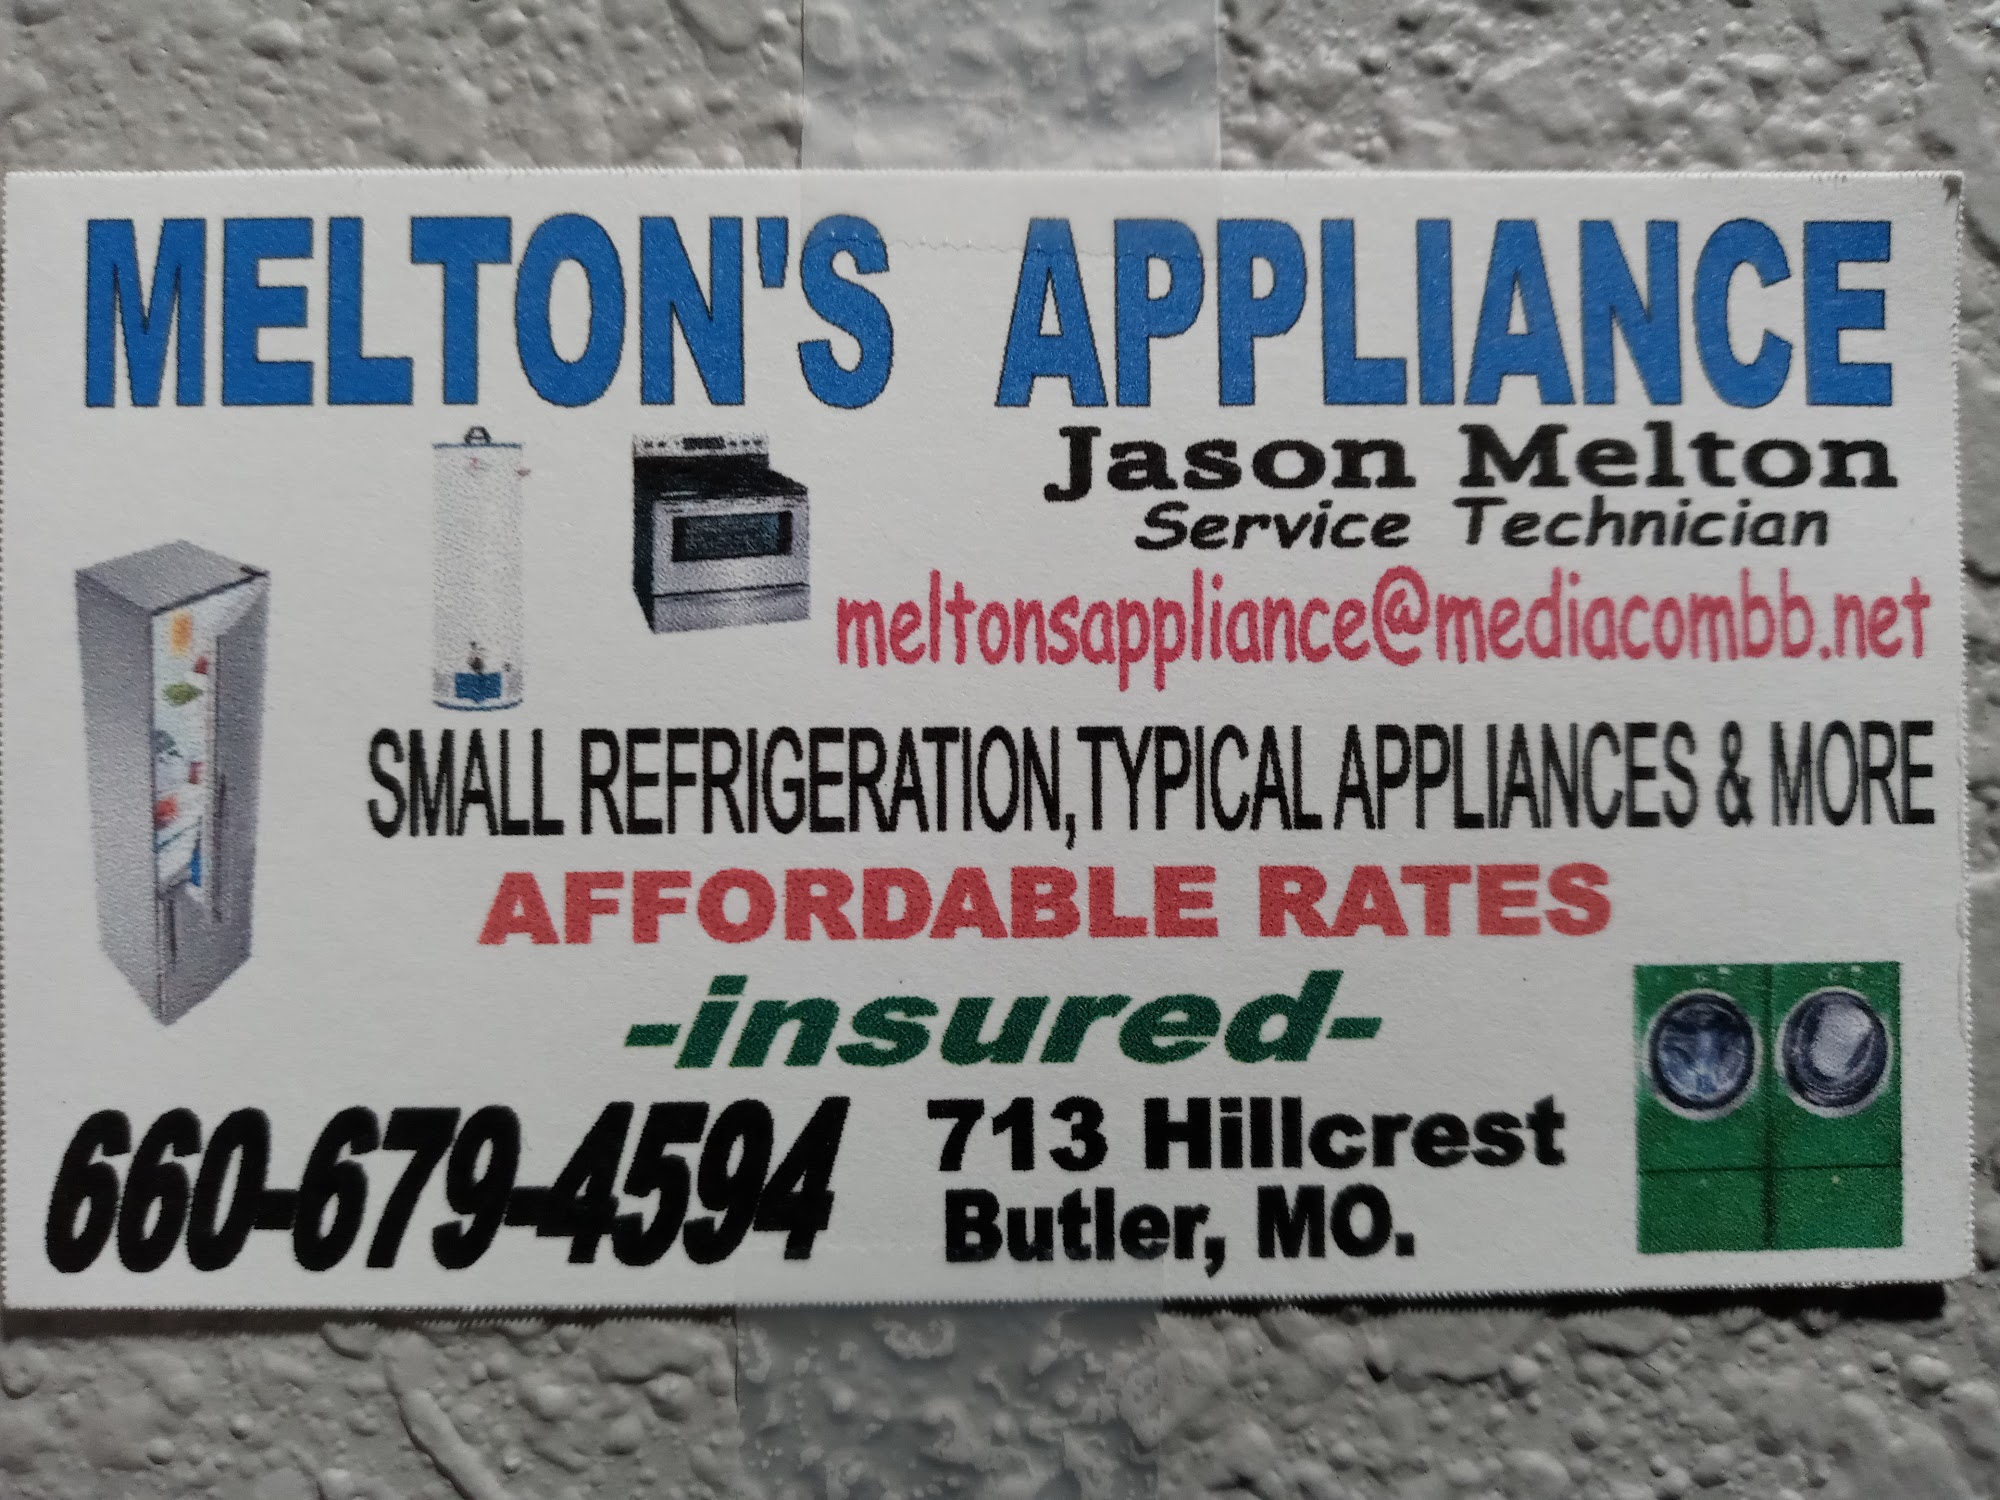 Meltons Appliance 713 Hillcrest St, Butler Missouri 64730